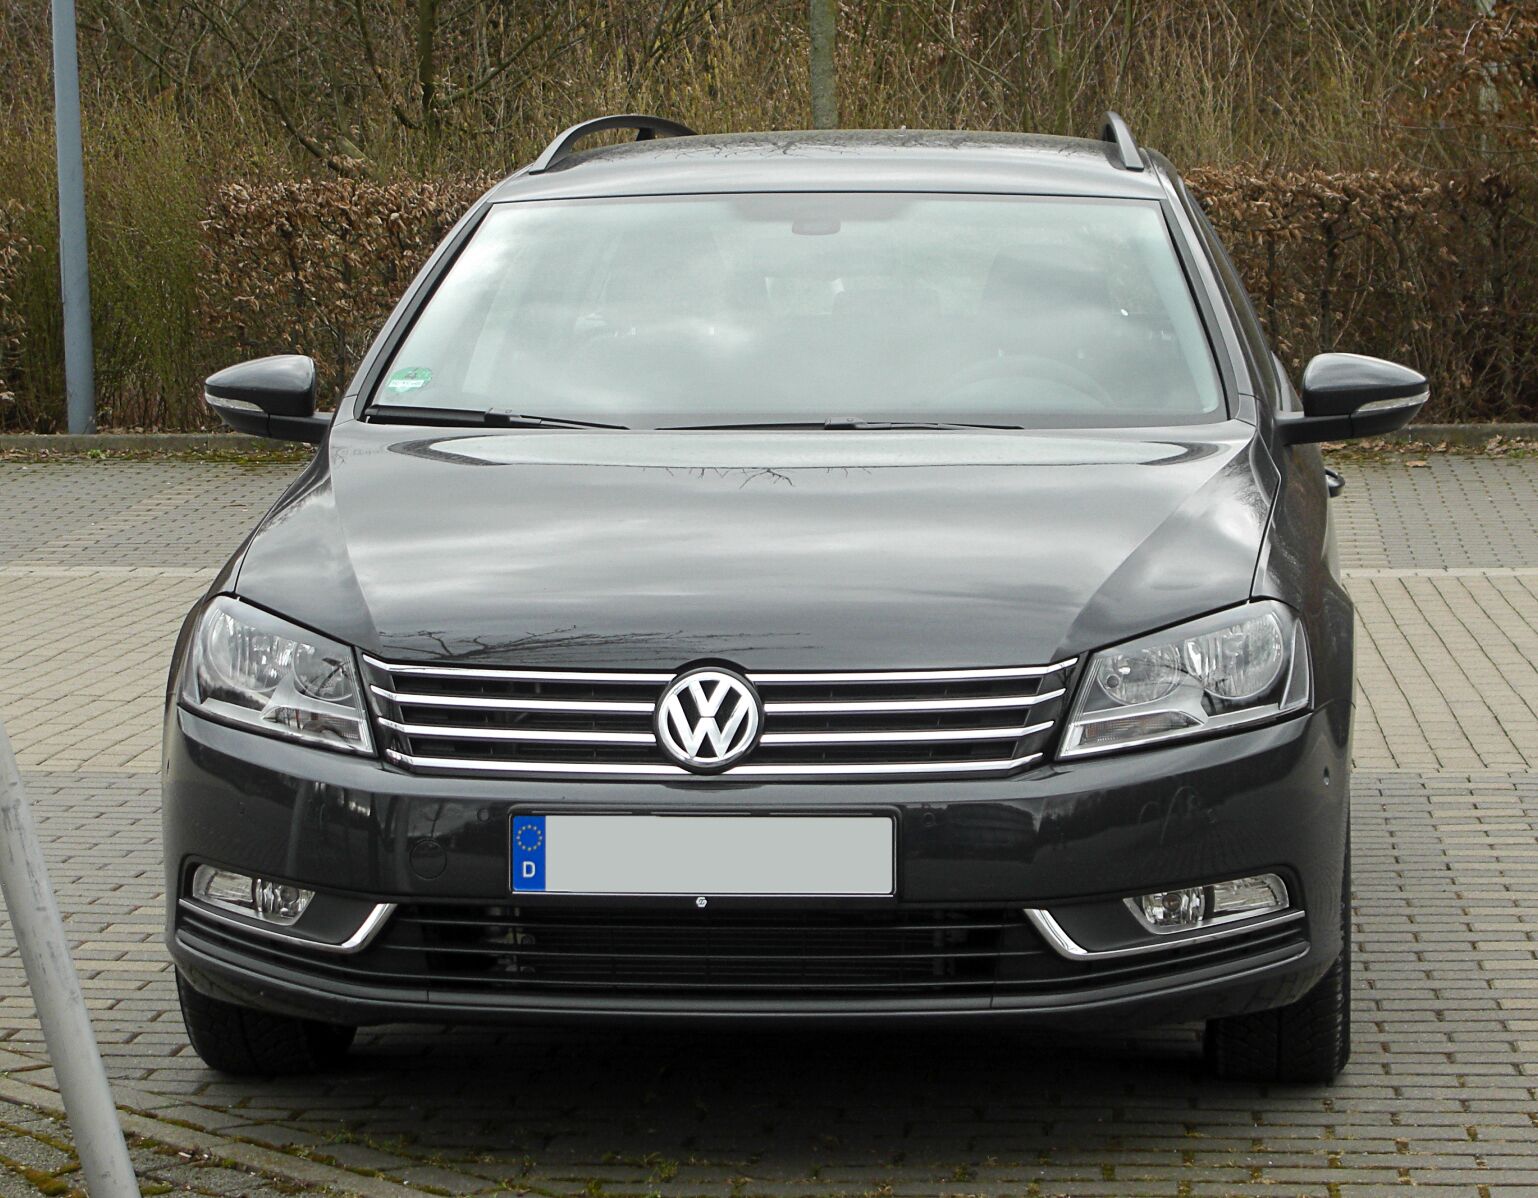 VW Passat B7 Typ 3C, Baujahr 2010 bis 2014 ▻ Technische Daten zu